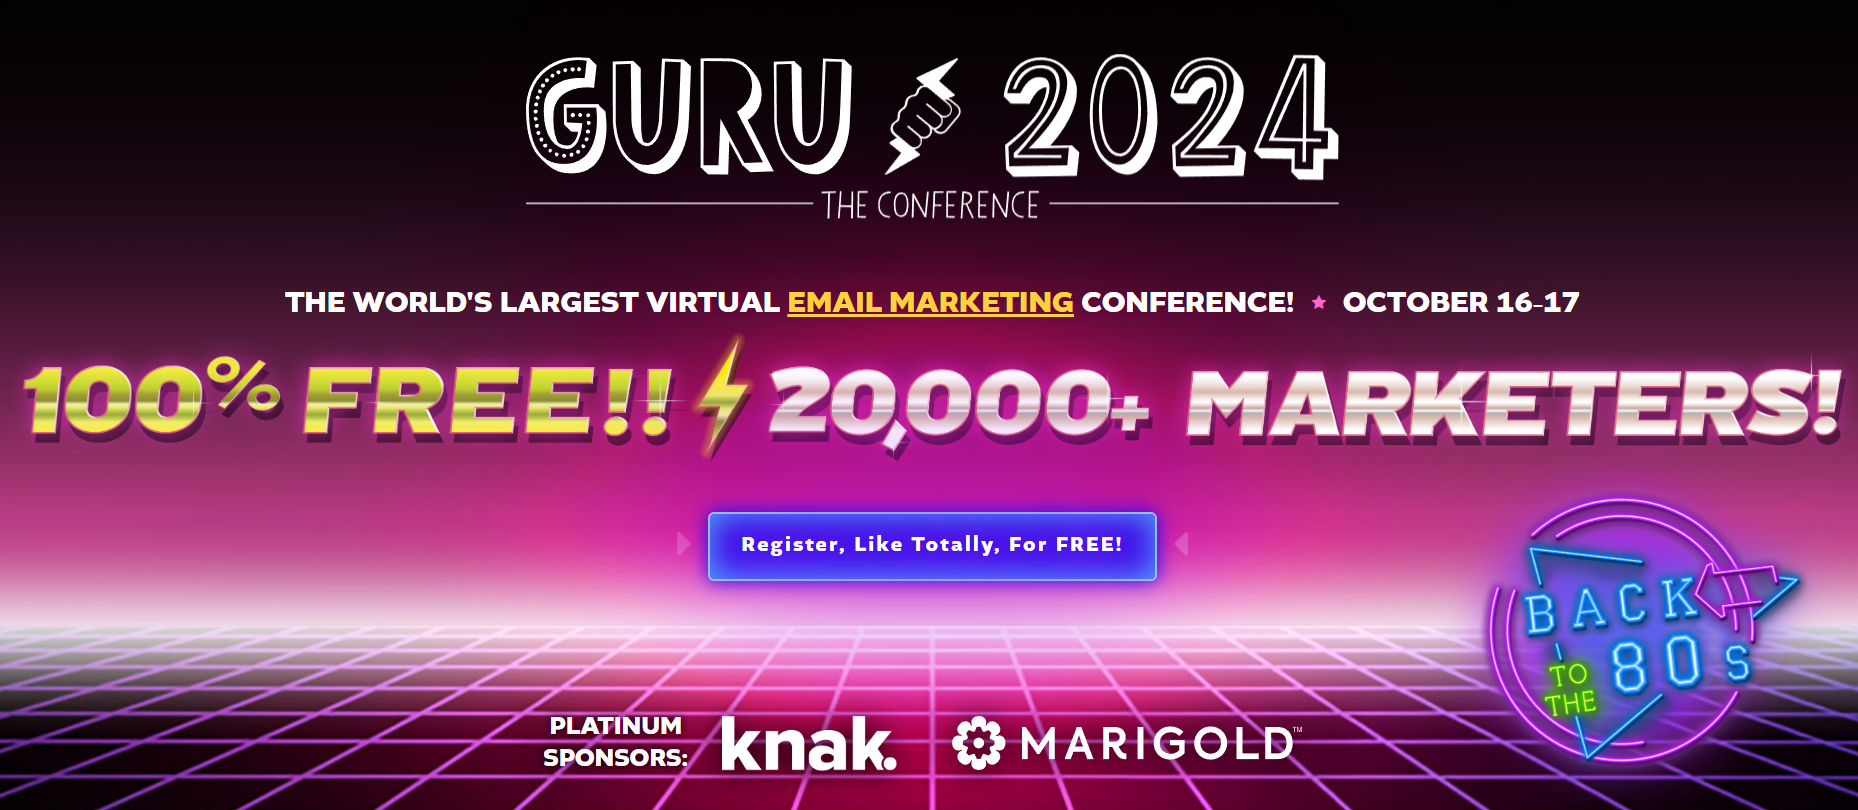 The GURU Conference _ ТОП мероприятий в сфере email-маркетинга